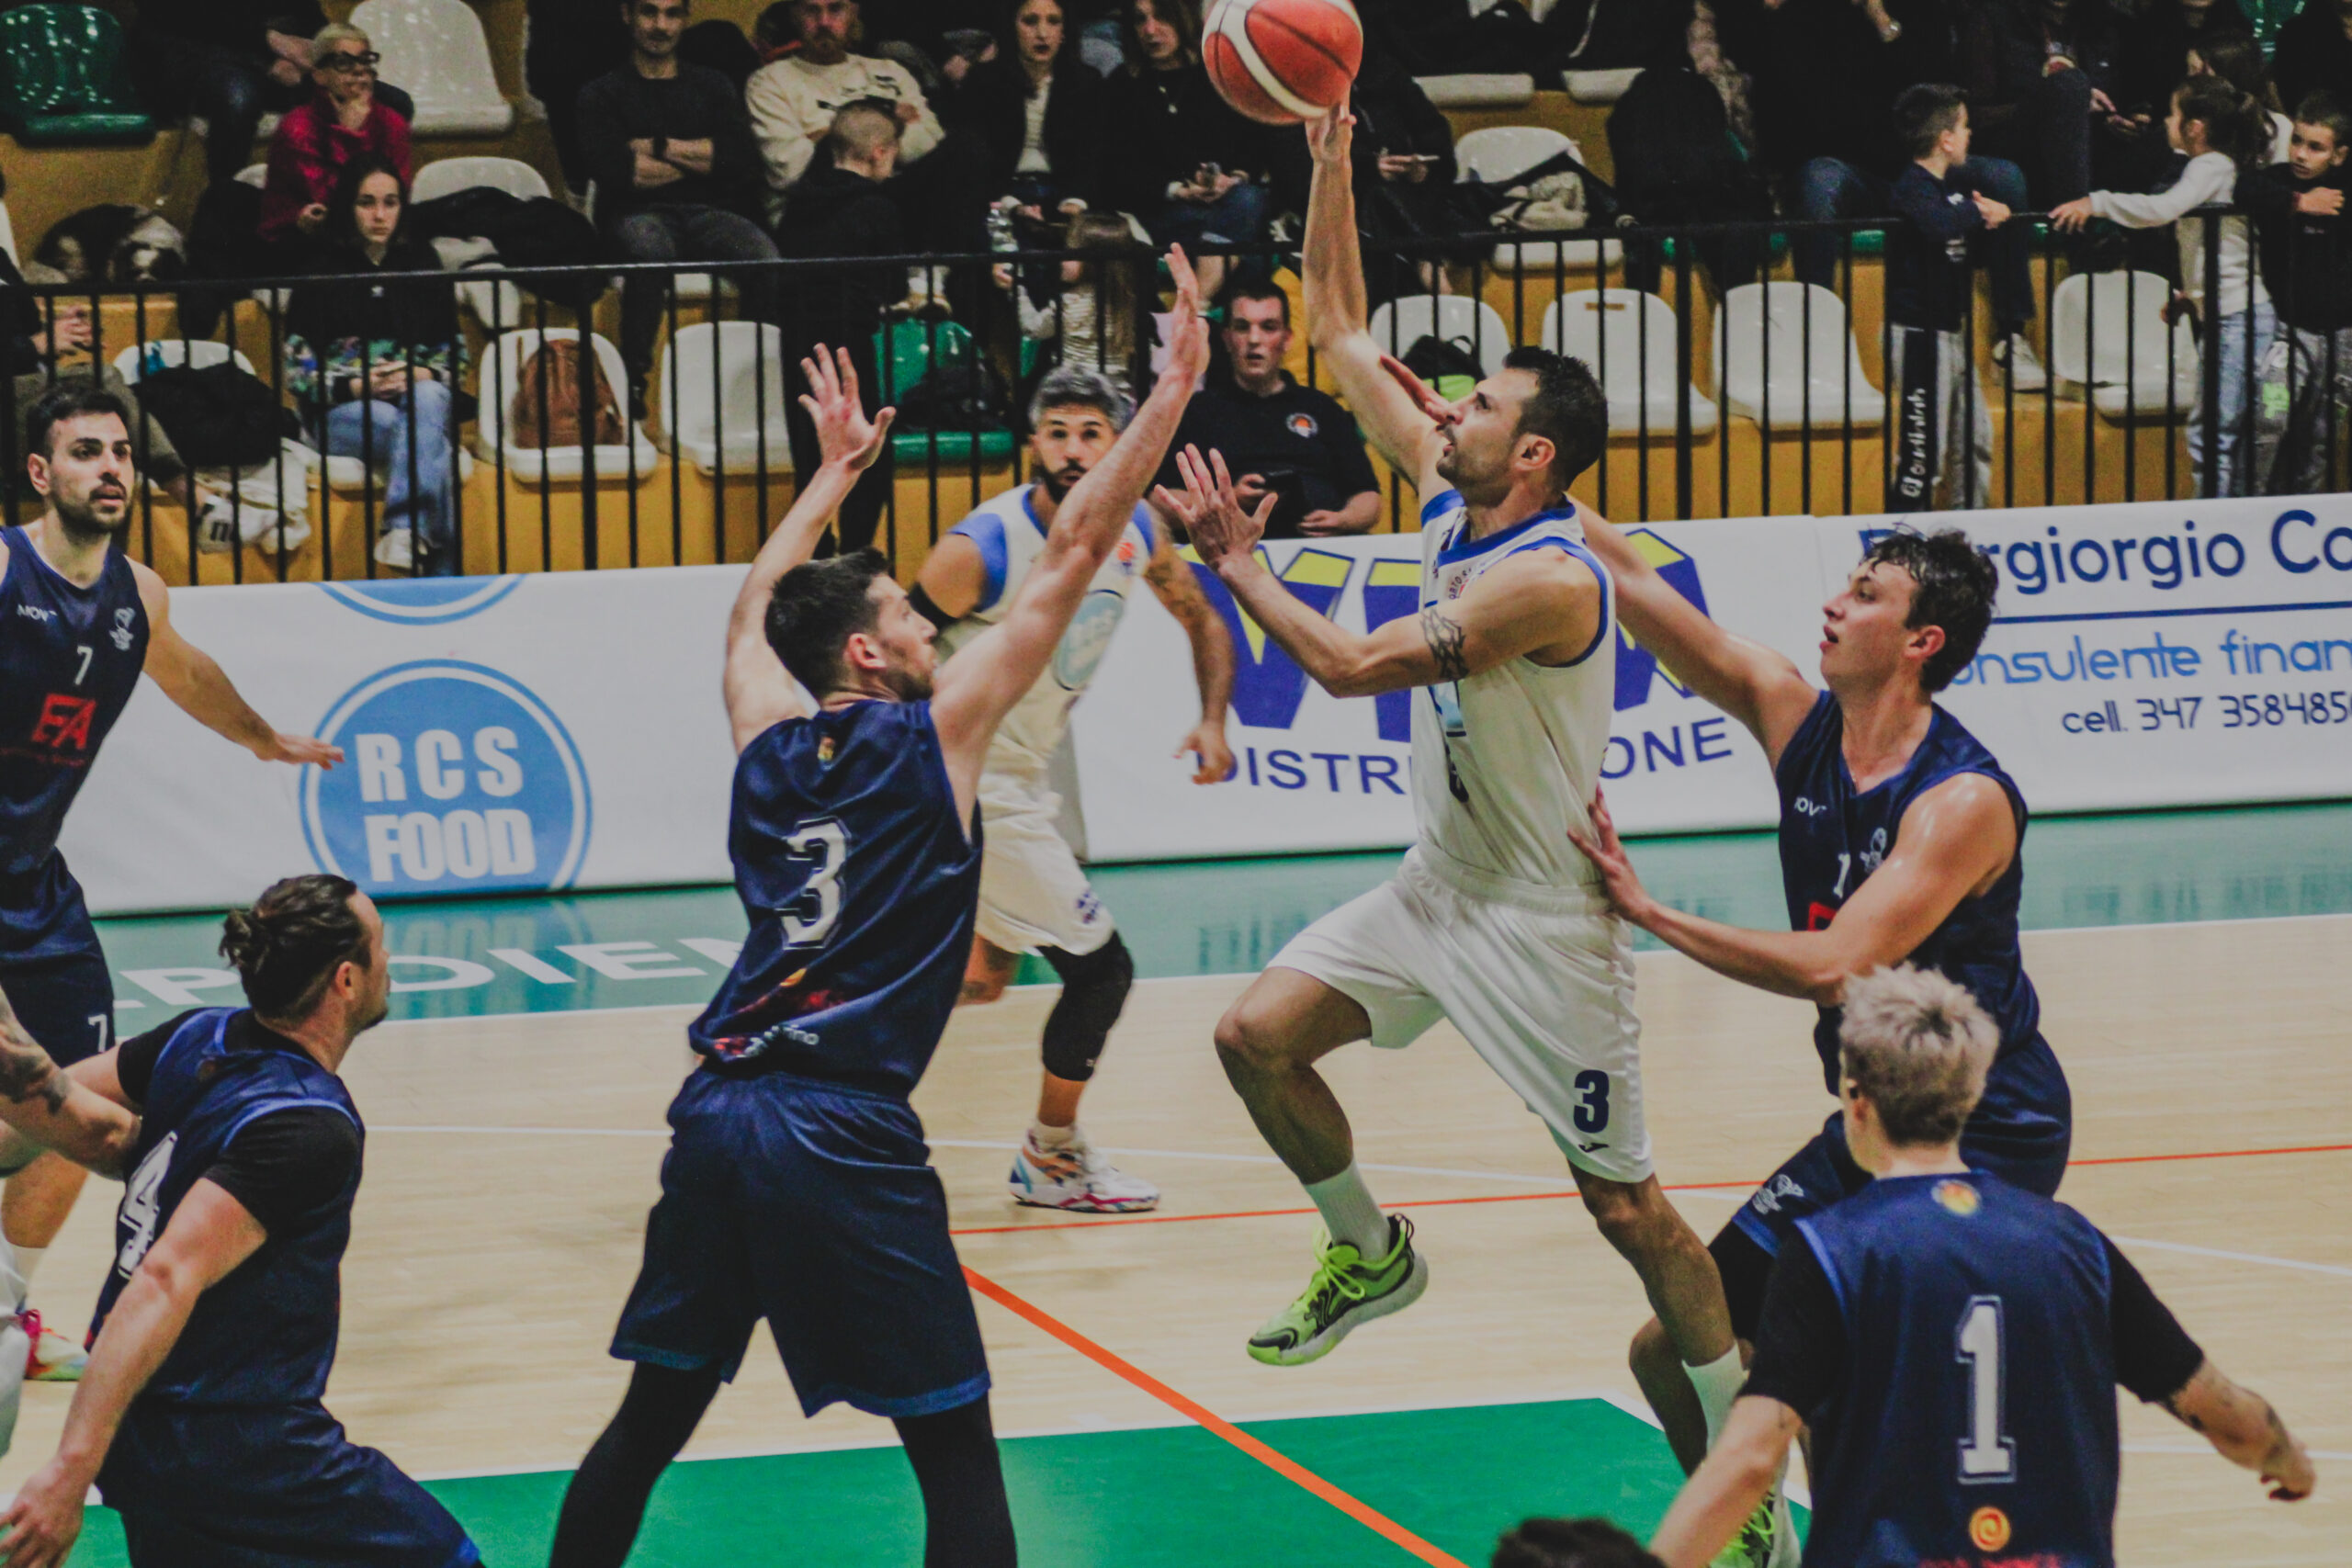 PSE Basket - Titano San Marino 75-69: uno a uno, domenica la bella!